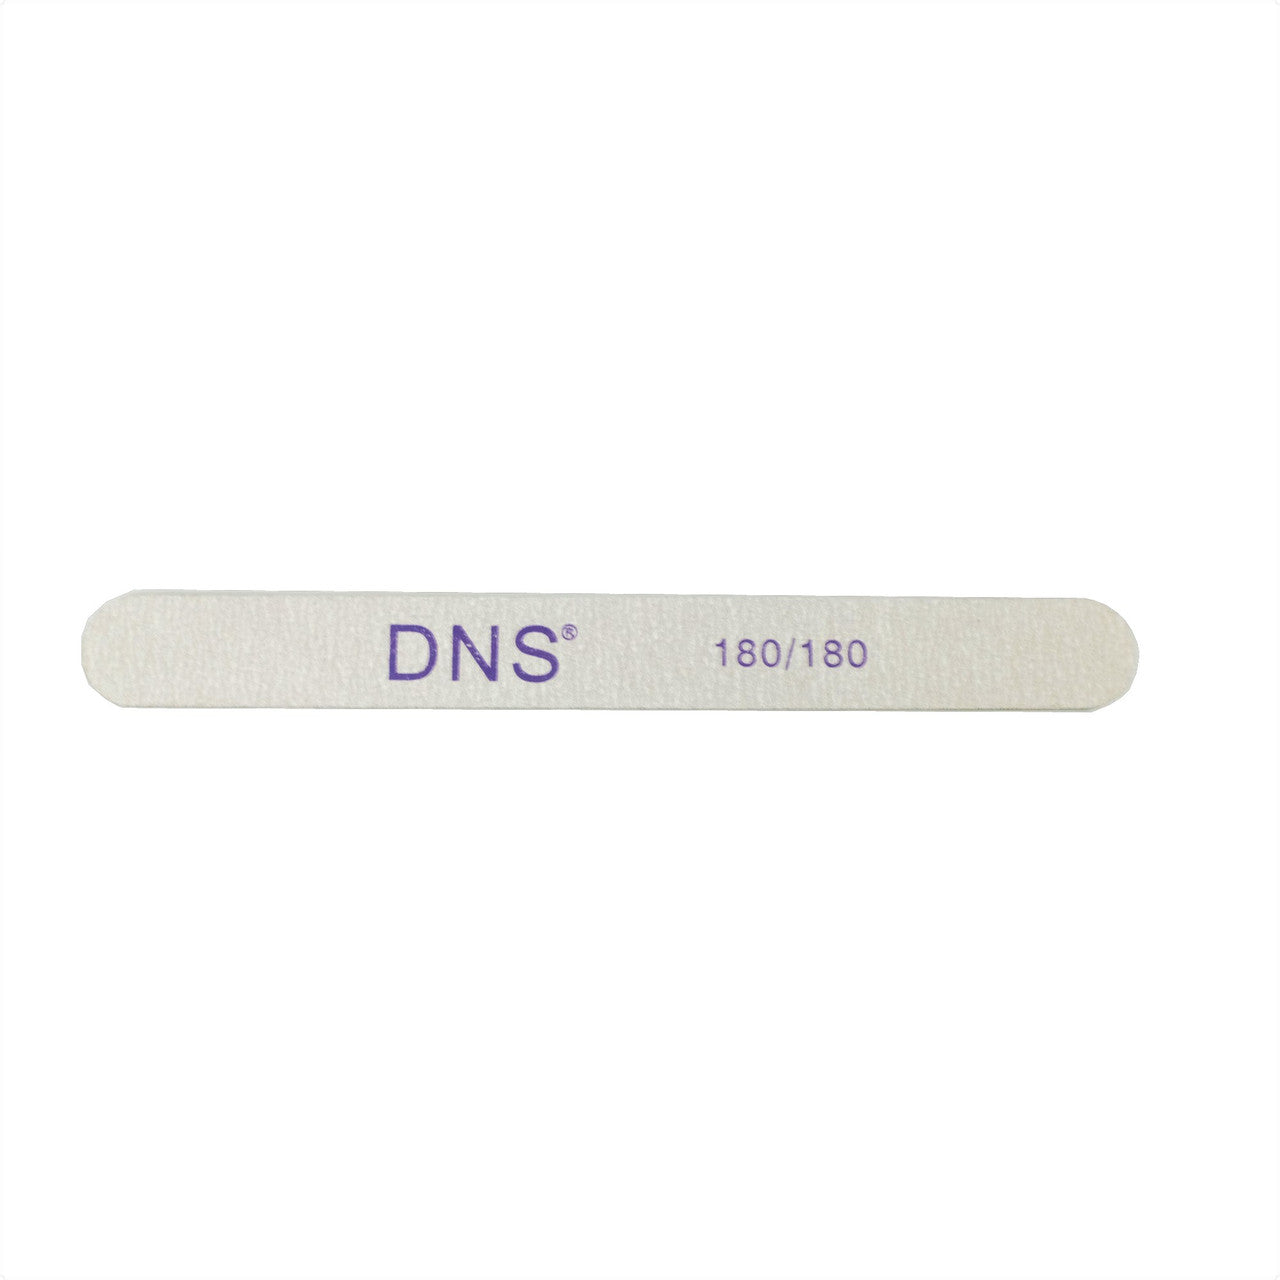 DNS File 180/180 Cushion Diamond Nail Supplies